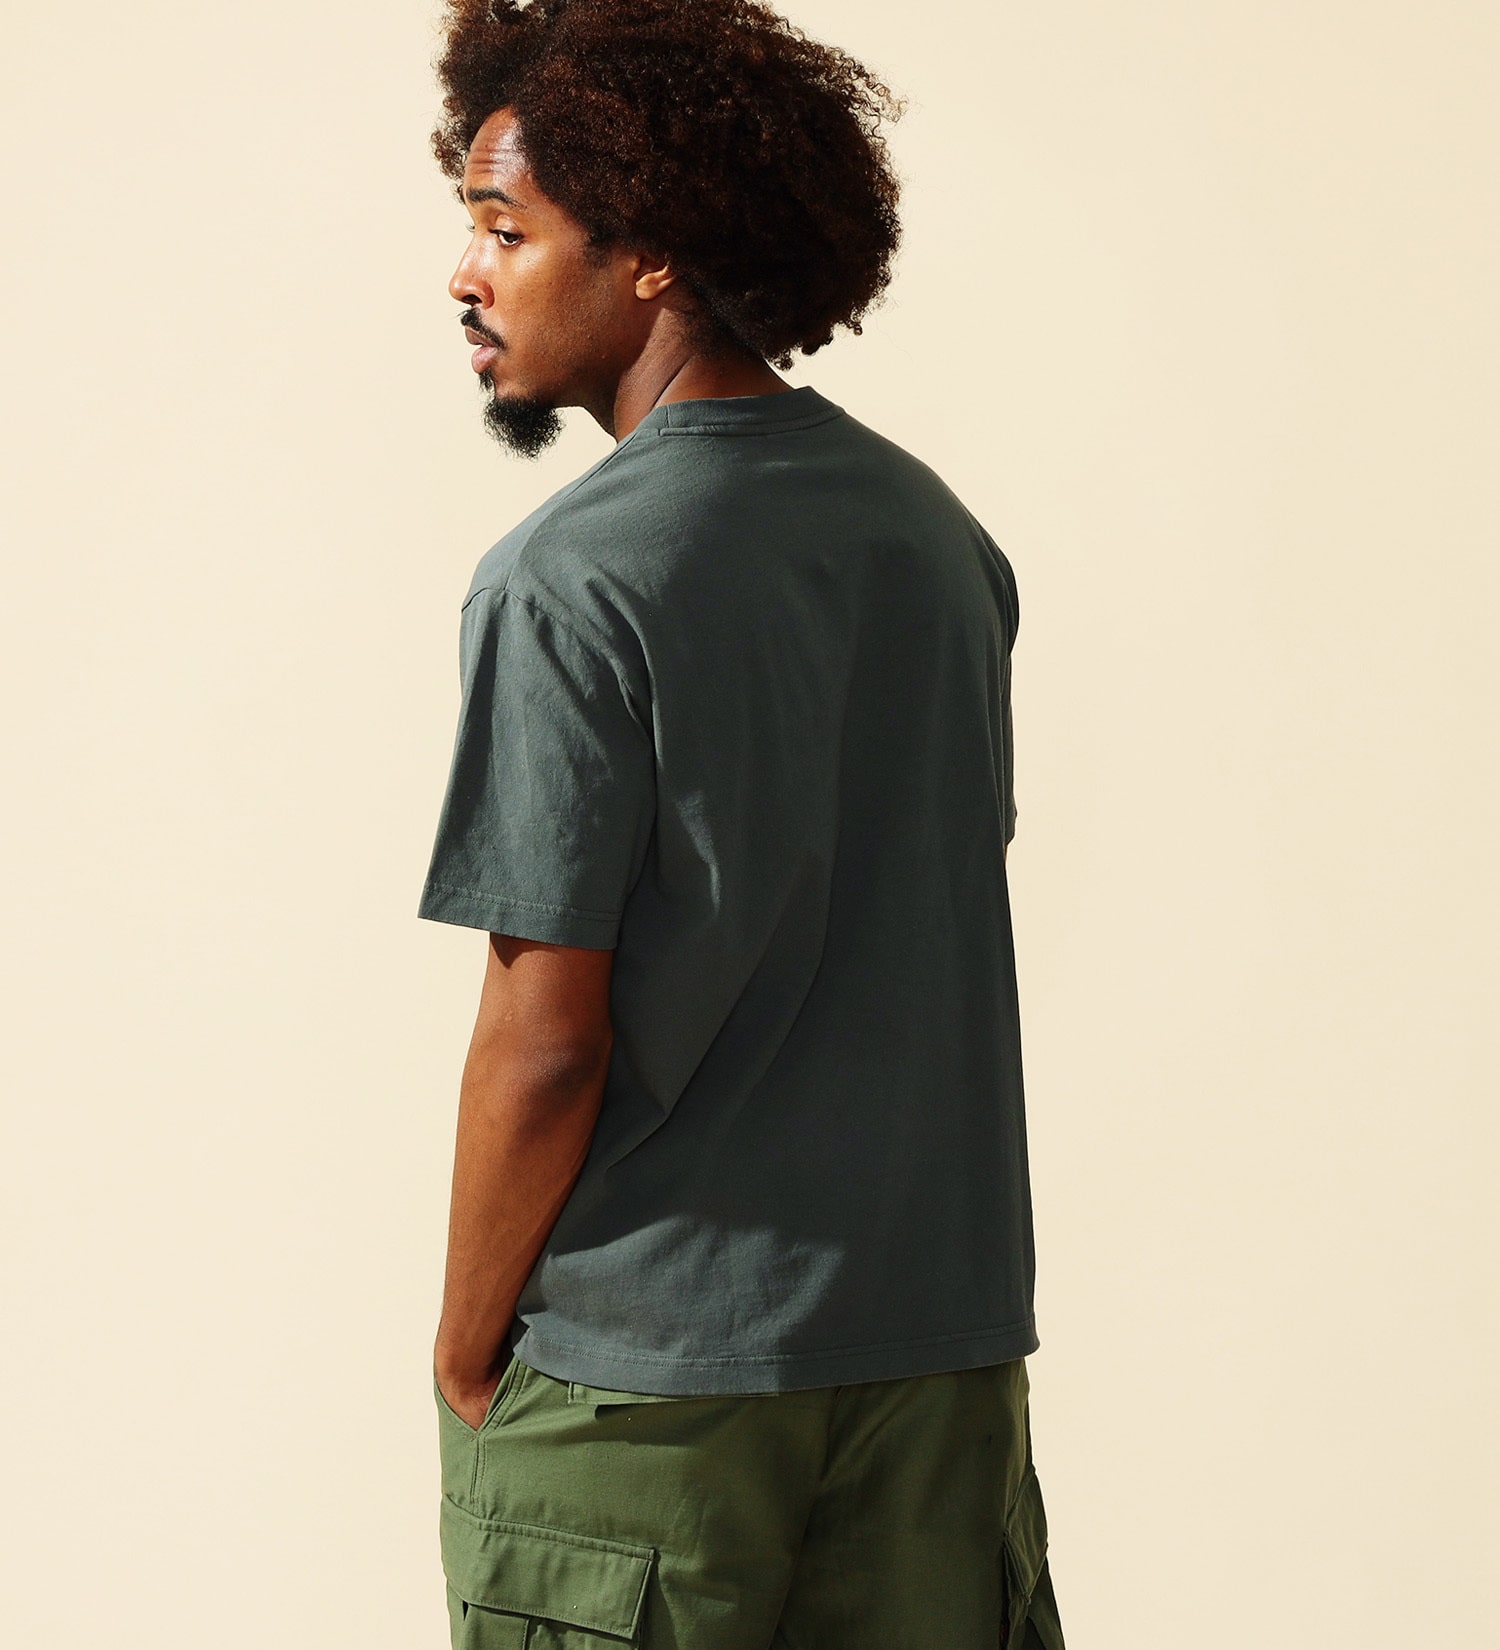 ALPHA(アルファ)のユーティリティーポケットTシャツ 半袖|トップス/Tシャツ/カットソー/メンズ|グレー